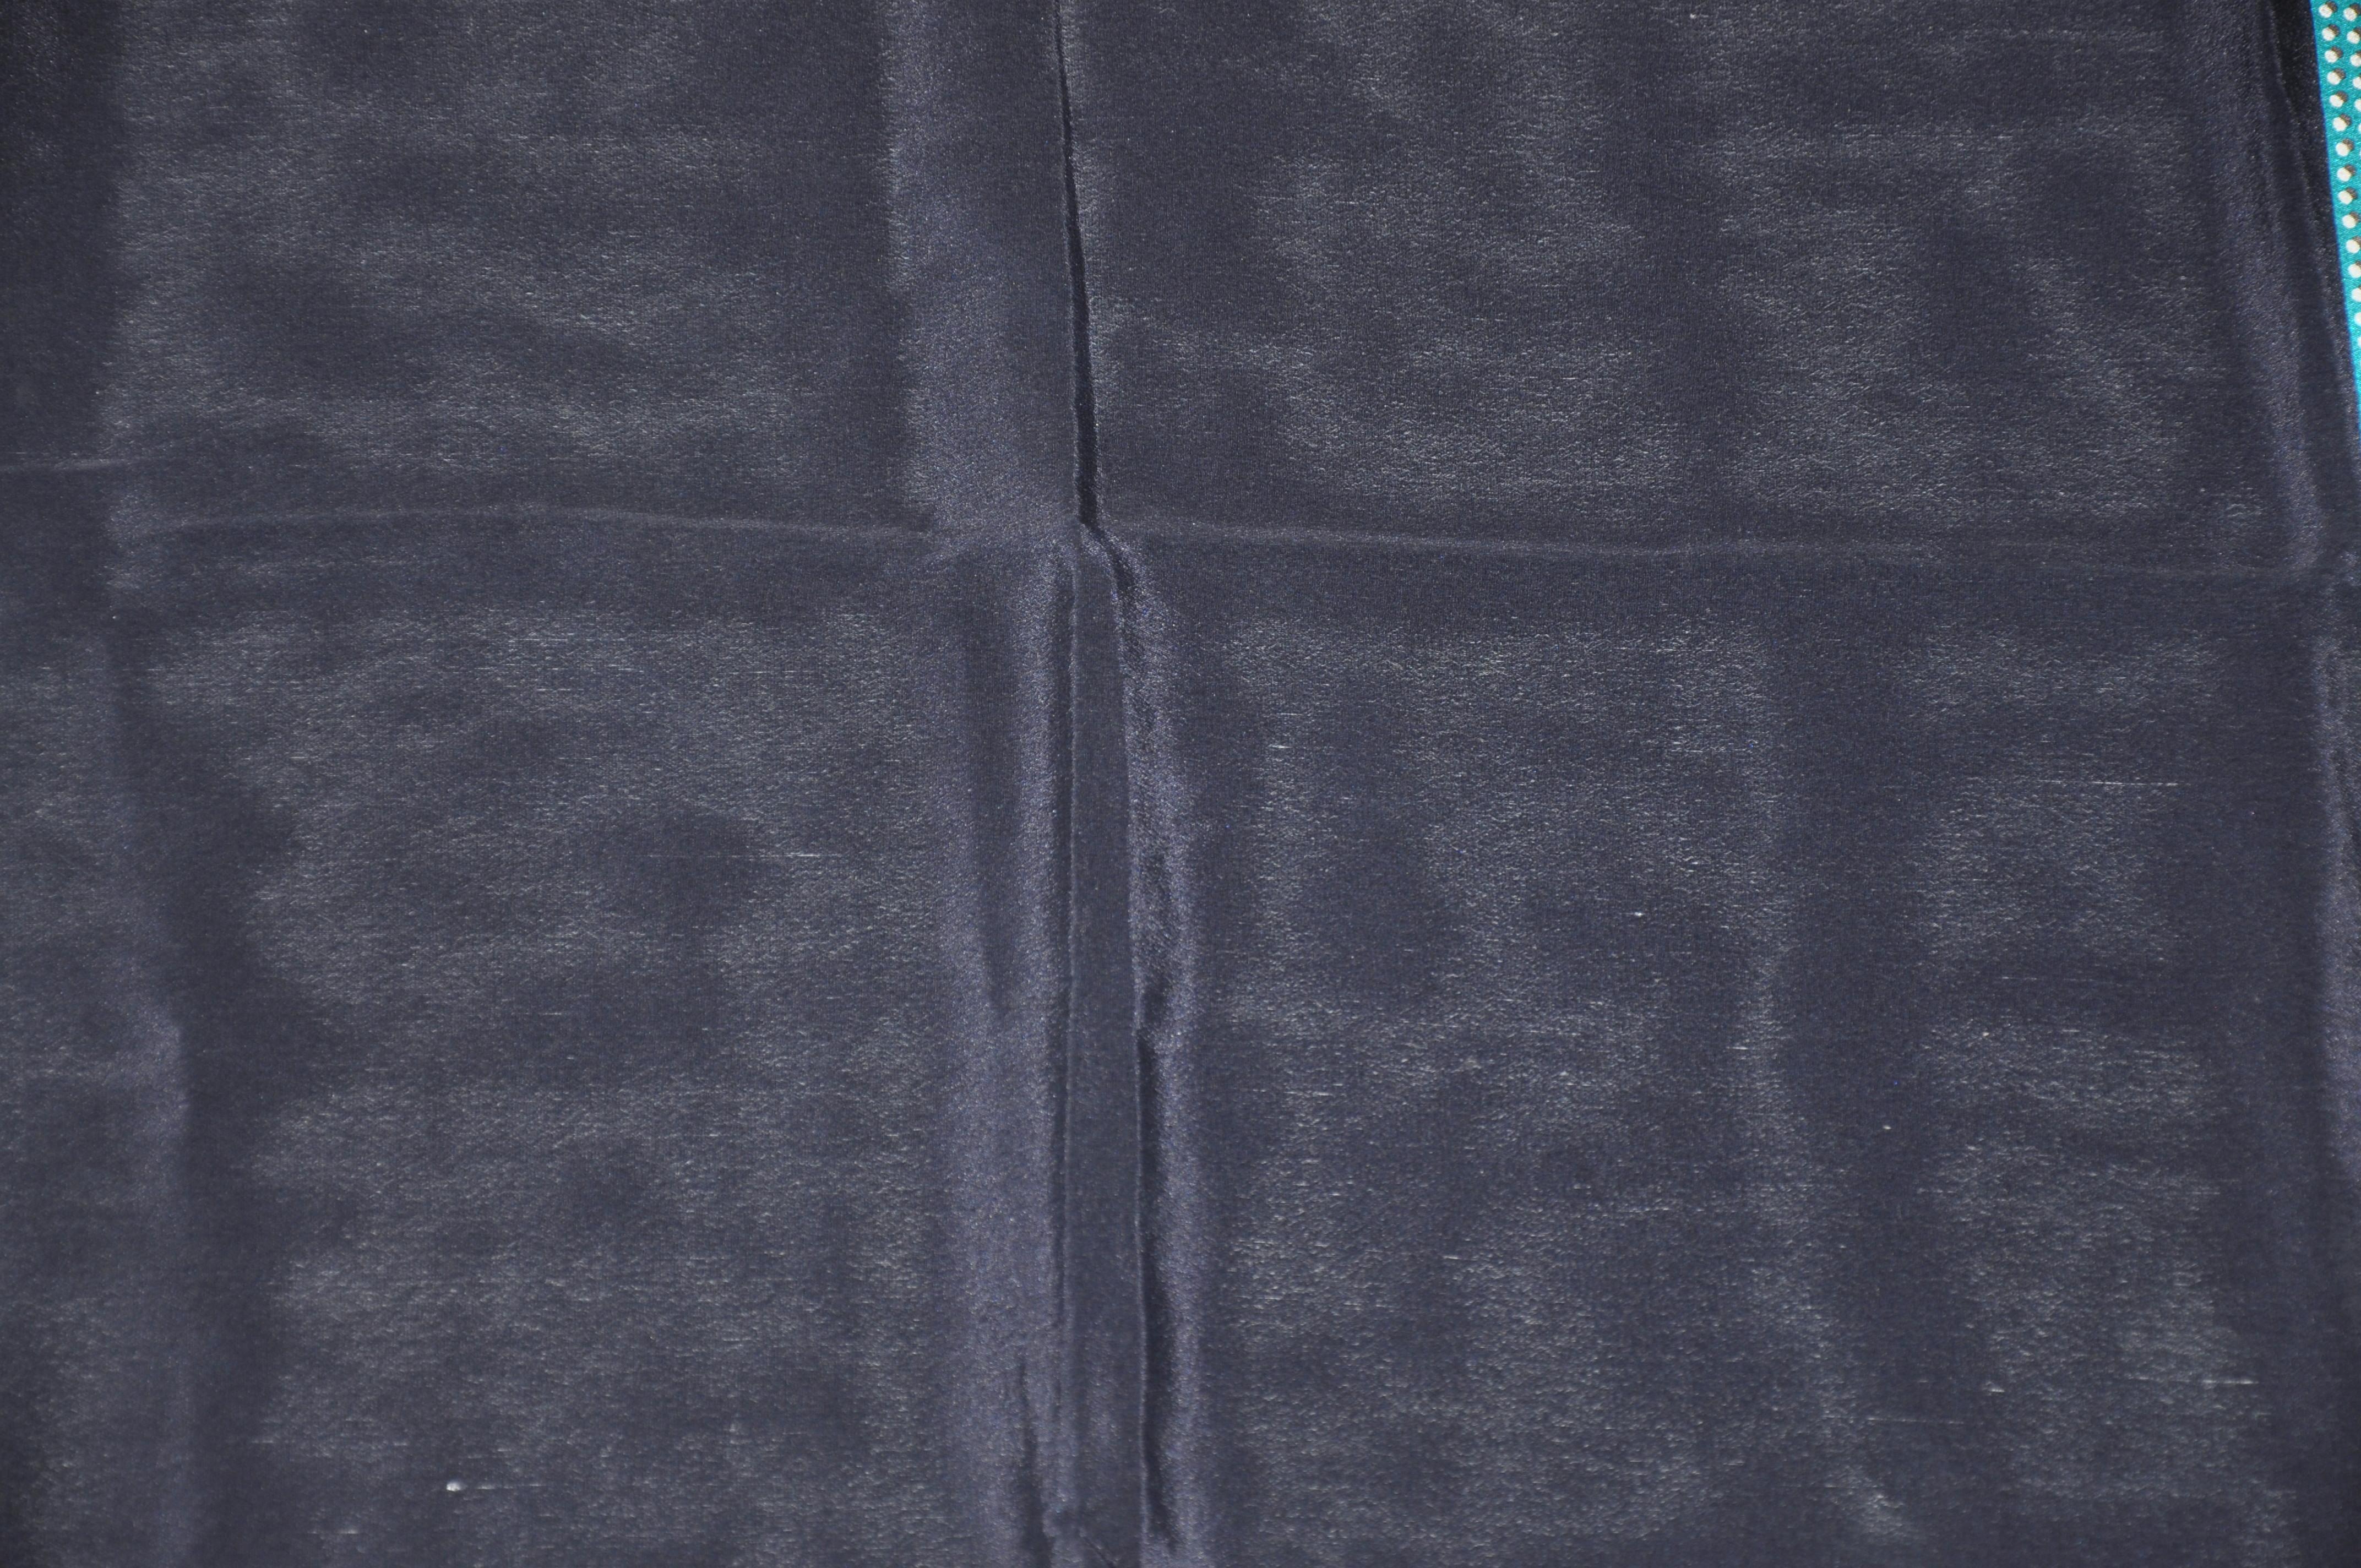     Perry Ellis magnifique écharpe en soie aux bordures bleu marine profond avec des pois turquoise accentués par des bords roulés à la main, mesure 31 pouces par 32 pouces. Fabriquées en Italie.